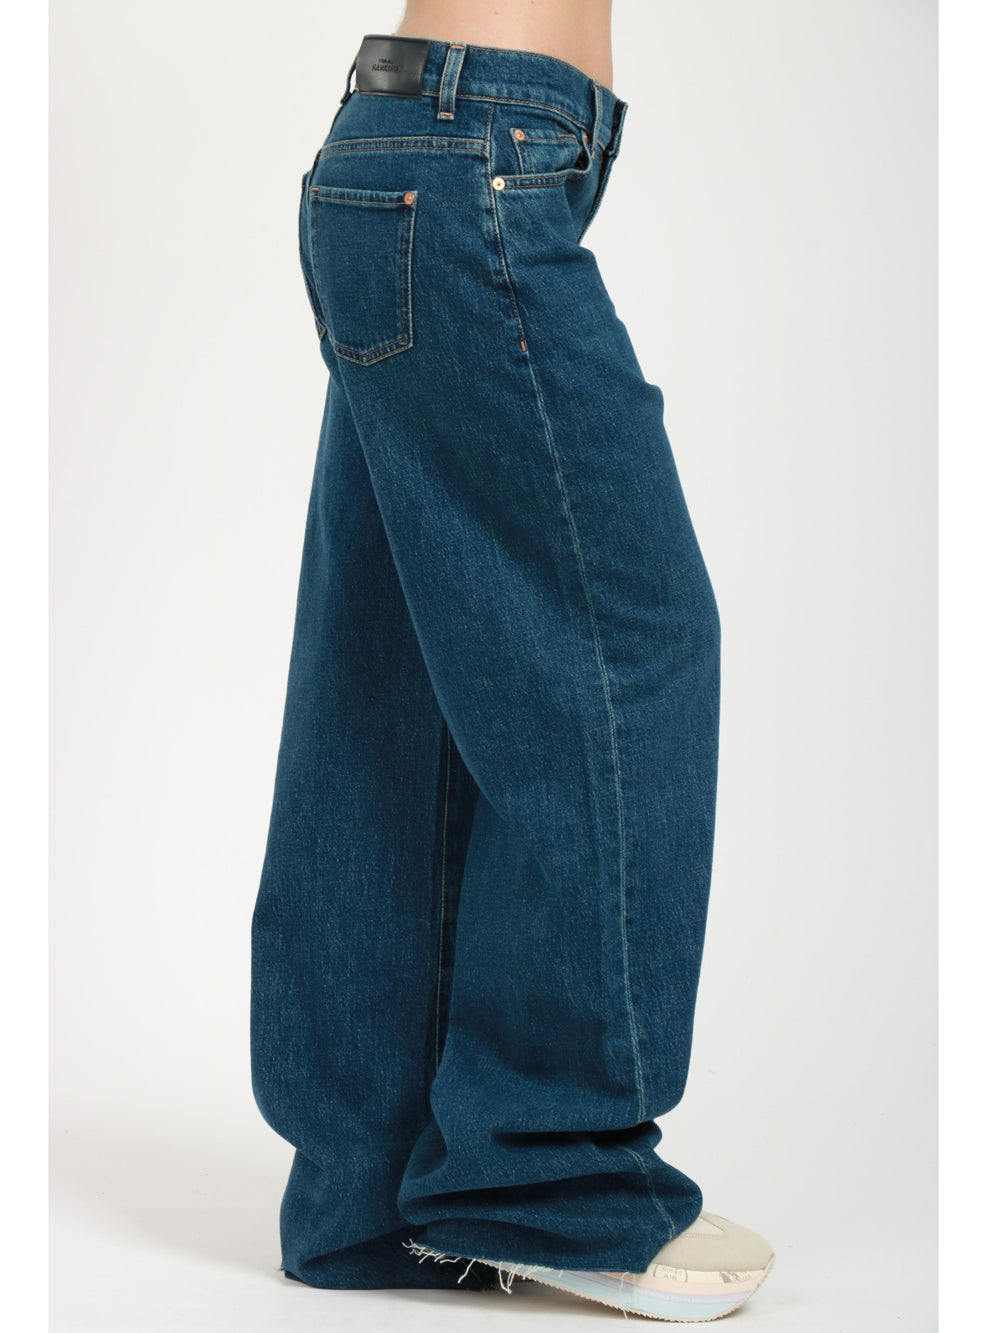 7 FOR ALL MANKIND Jeans Scout in Denim di Cotone Elasticizzato Blu Denim Blu